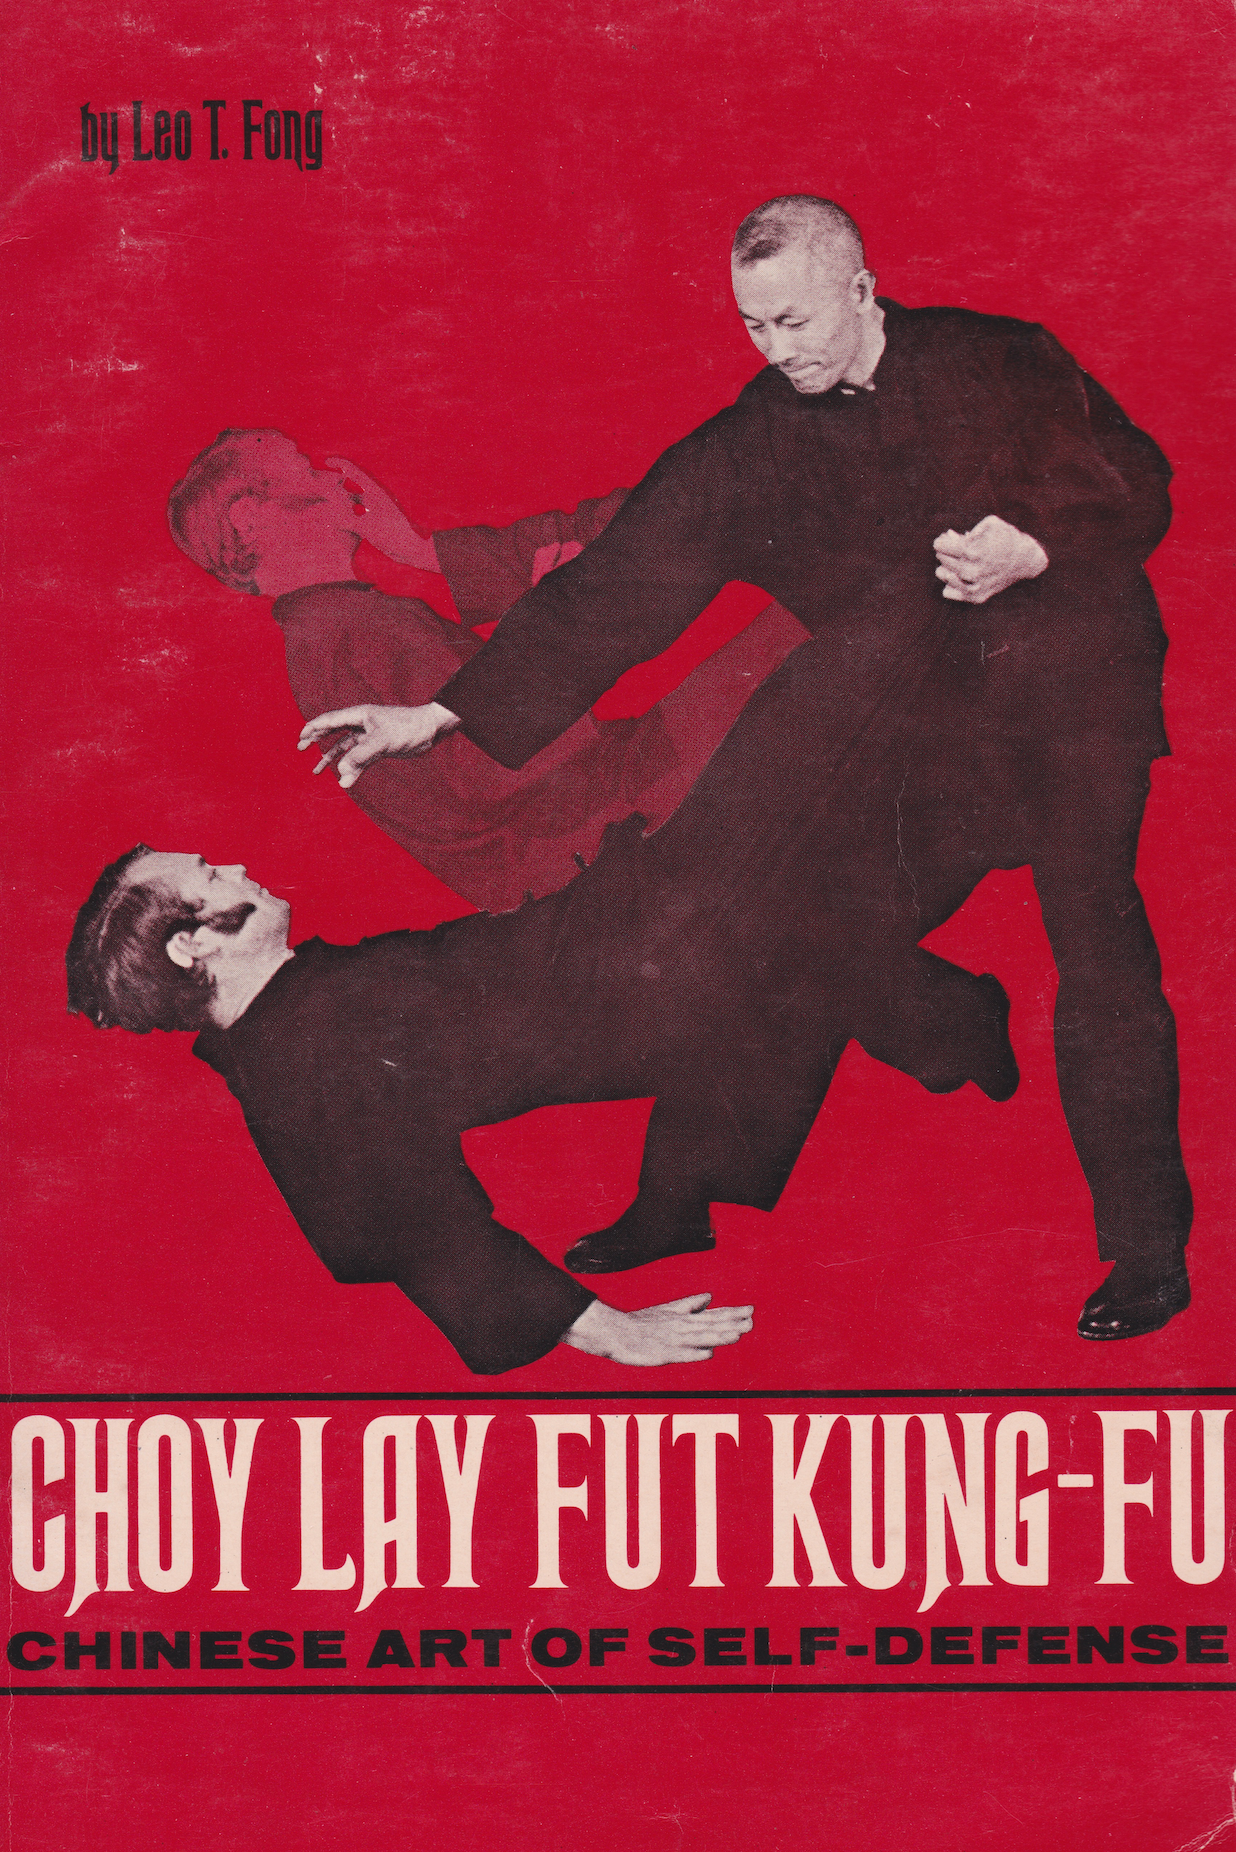 Choy Lay Fut Kung-Fu: Libro del arte chino de la autodefensa de Leo Fong (usado)